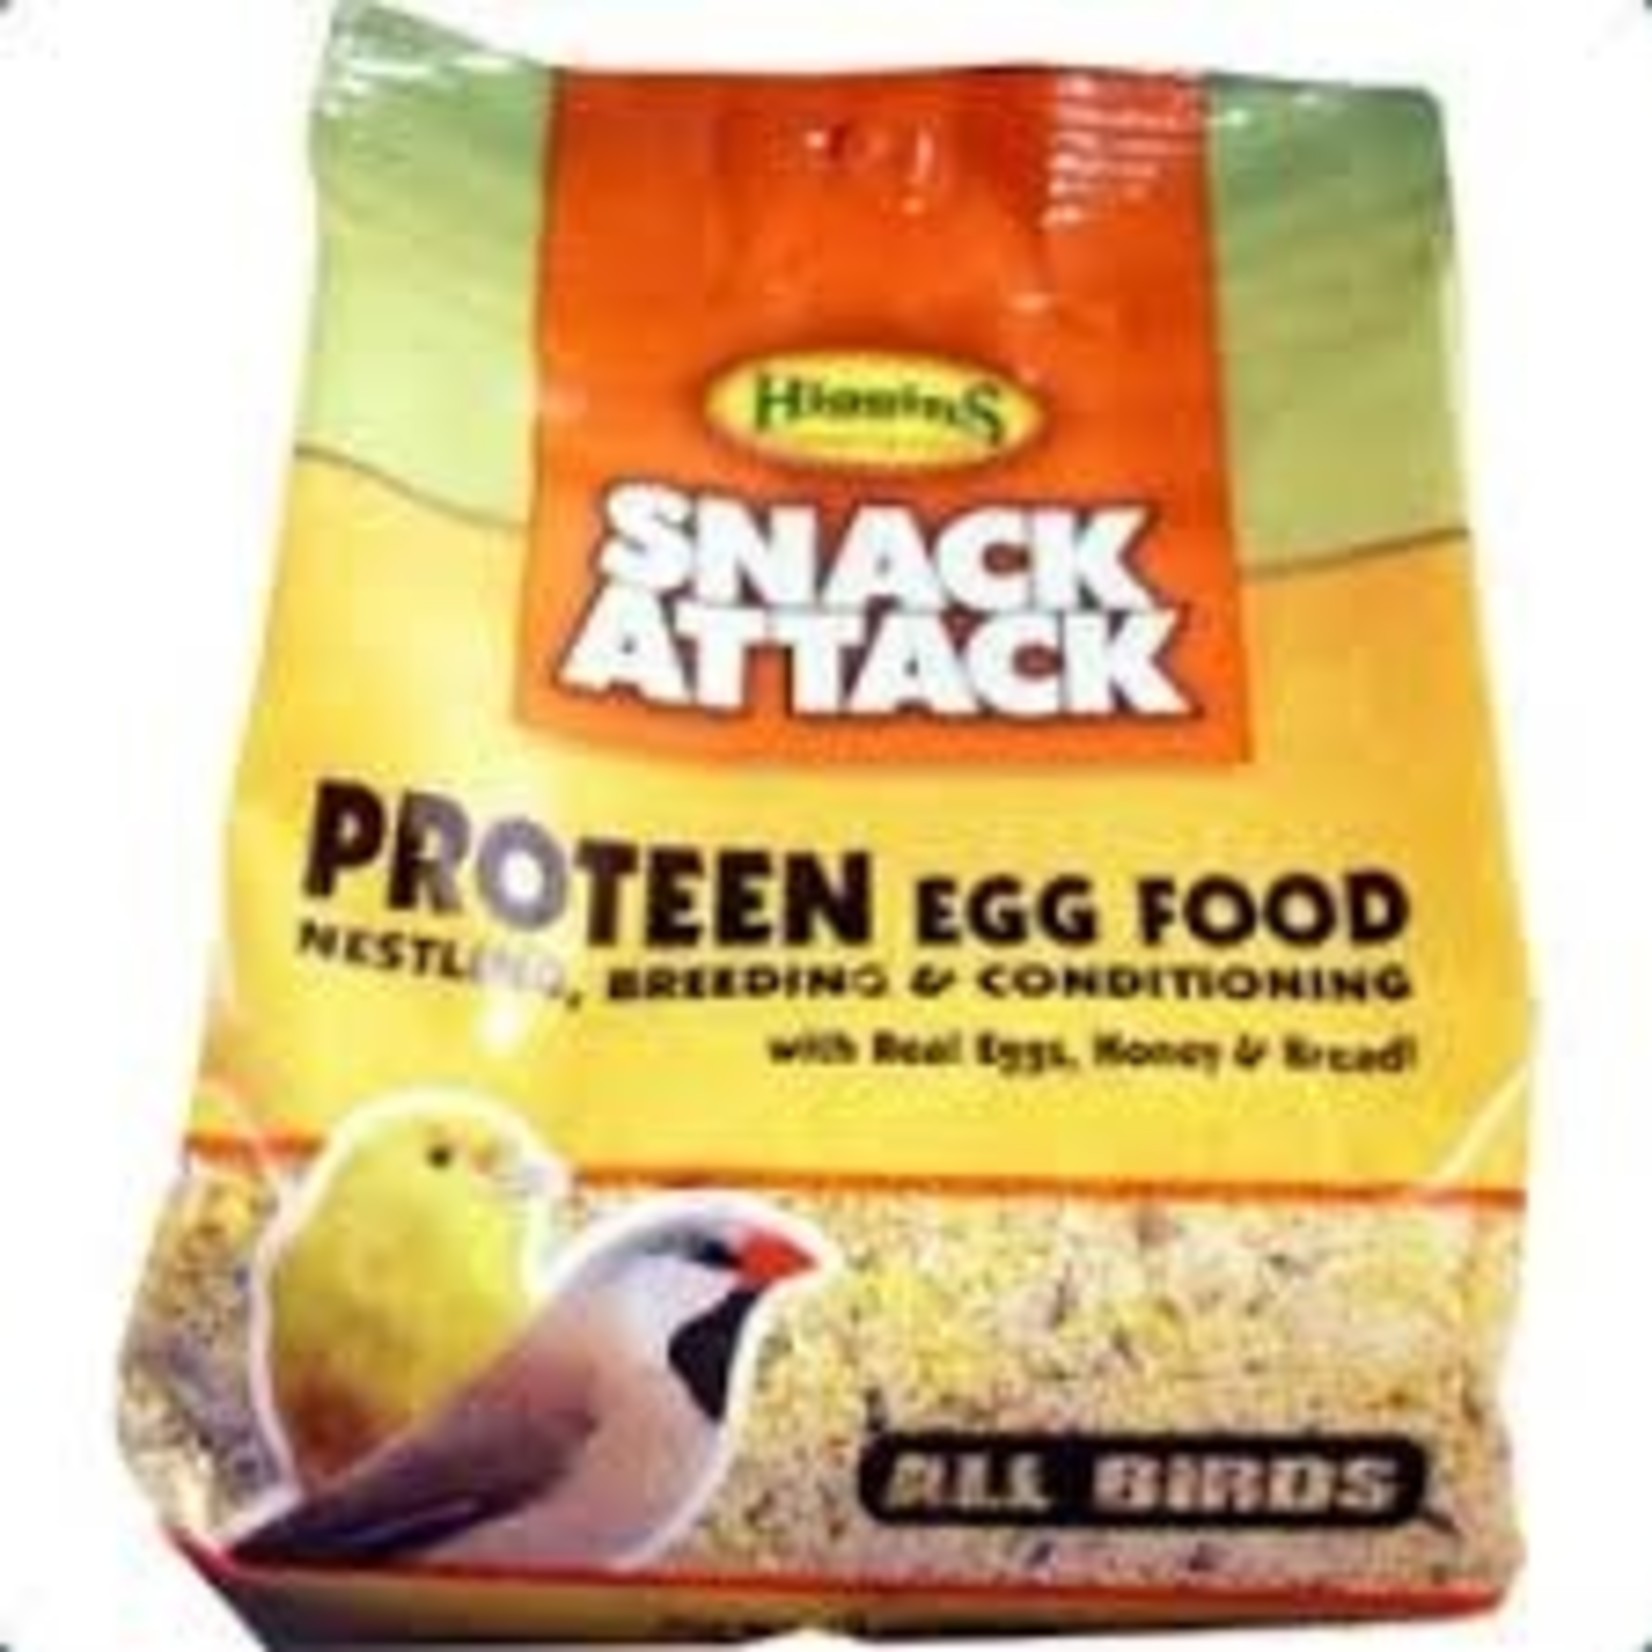 Higgins Hig Protein egg Food 5oz